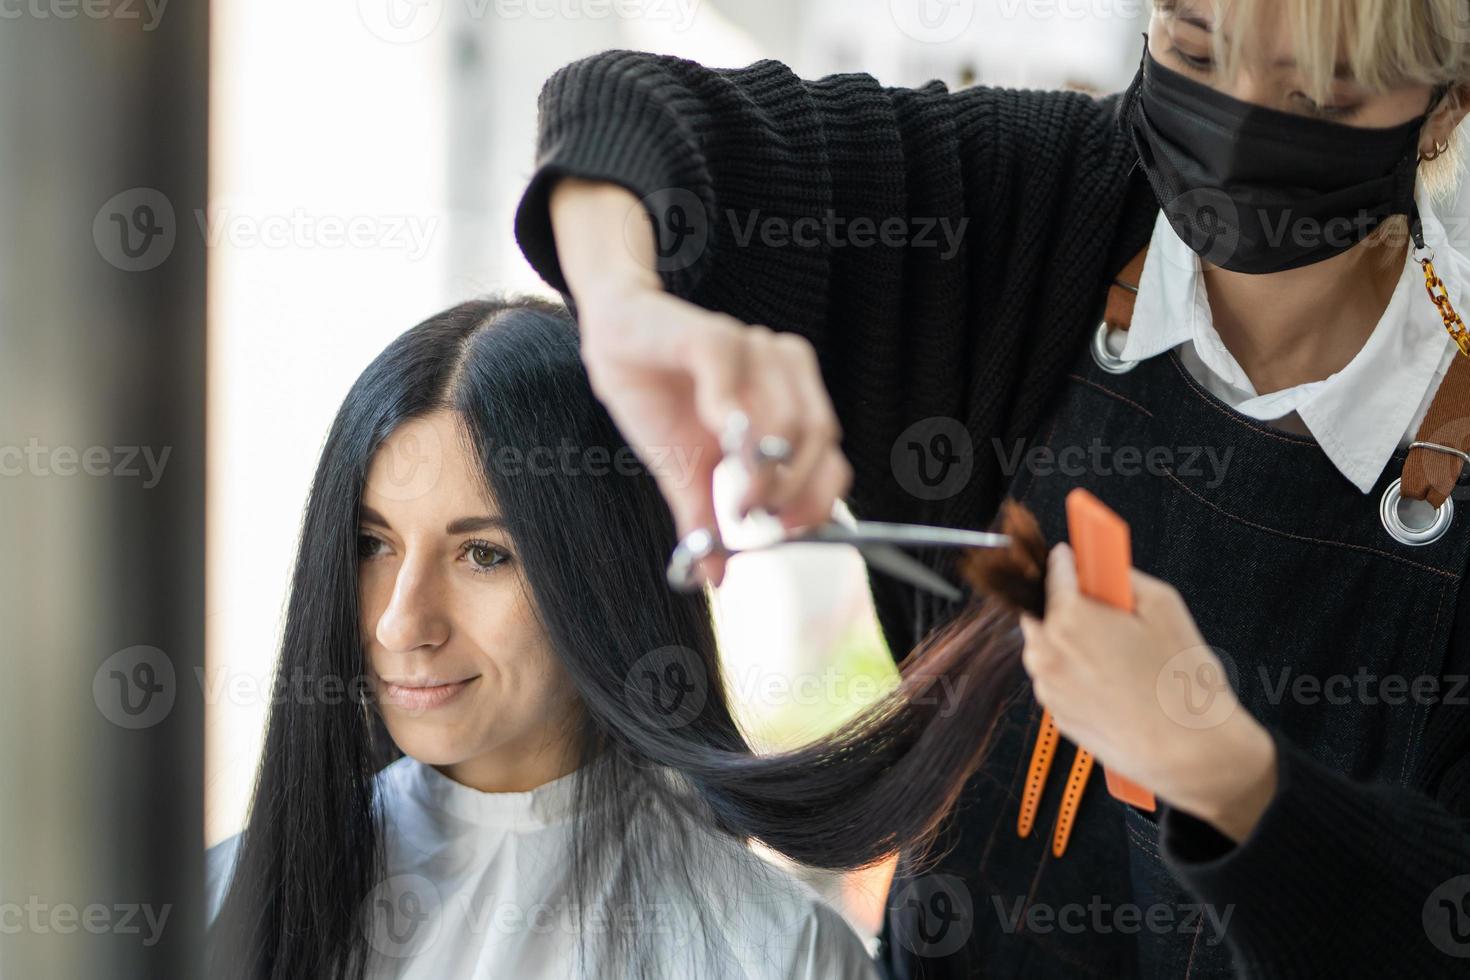 mujeres caucásicas con cabello elegante mientras se cortan el cabello y usan mascarilla quirúrgica mientras peinan el cabello para el cliente. ocupación profesional, servicio de belleza y moda nueva normalidad. foto